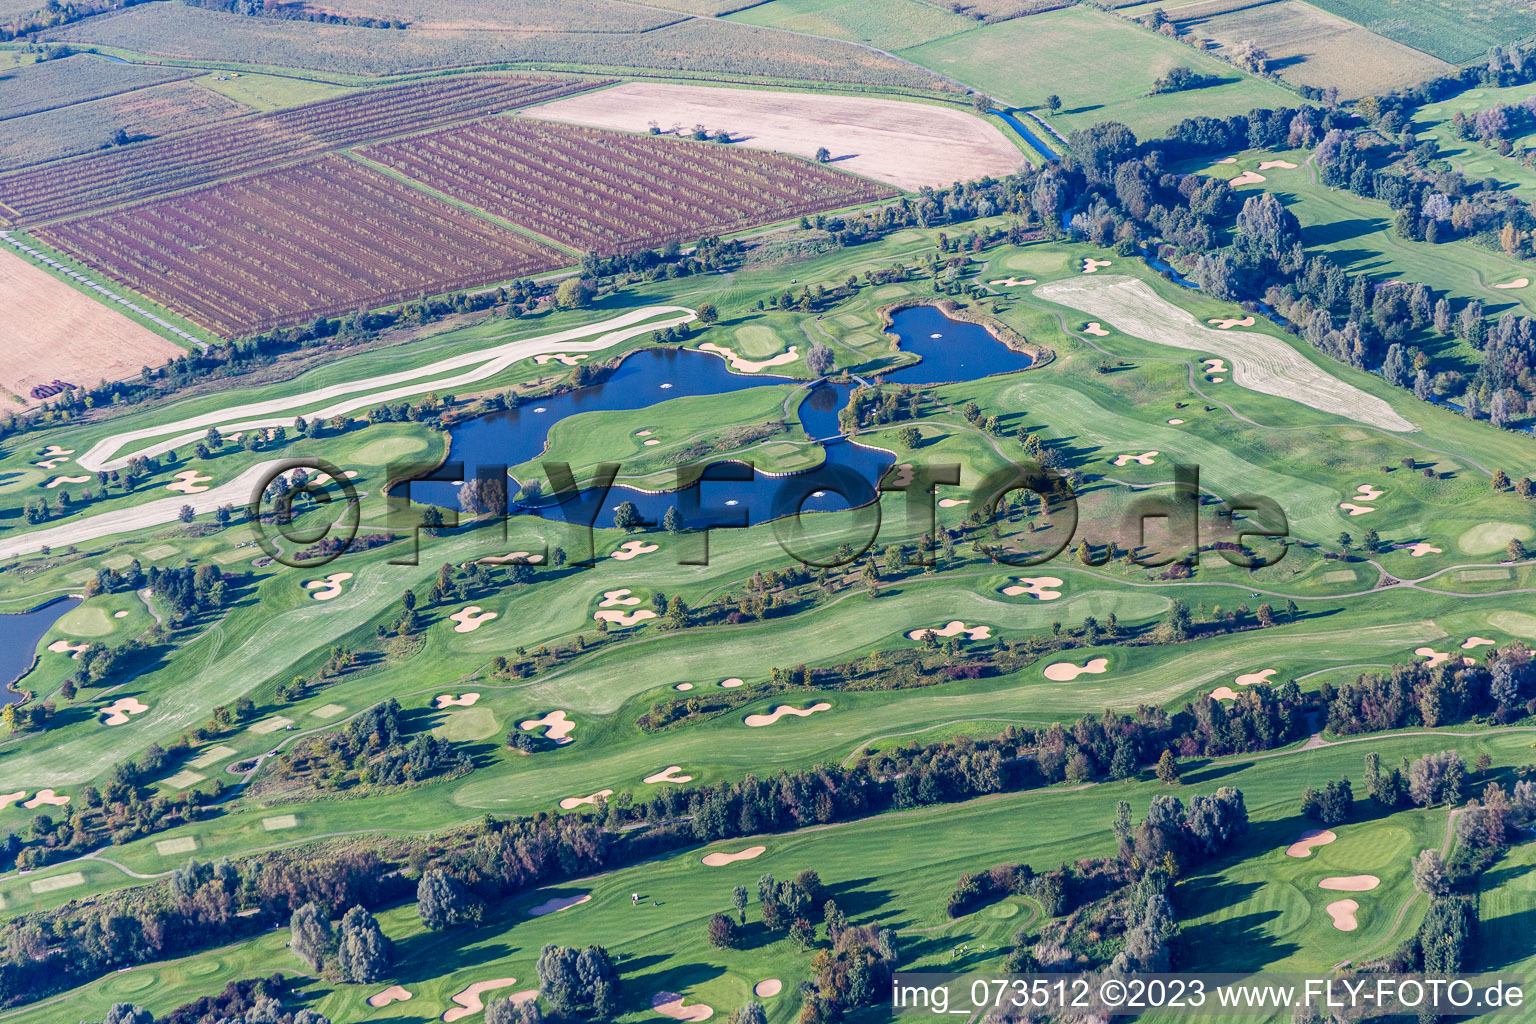 Schrägluftbild von Gelände des Golfplatz des Golf Club St. Leon-Rot in Sankt Leon-Rot im Bundesland Baden-Württemberg, Deutschland